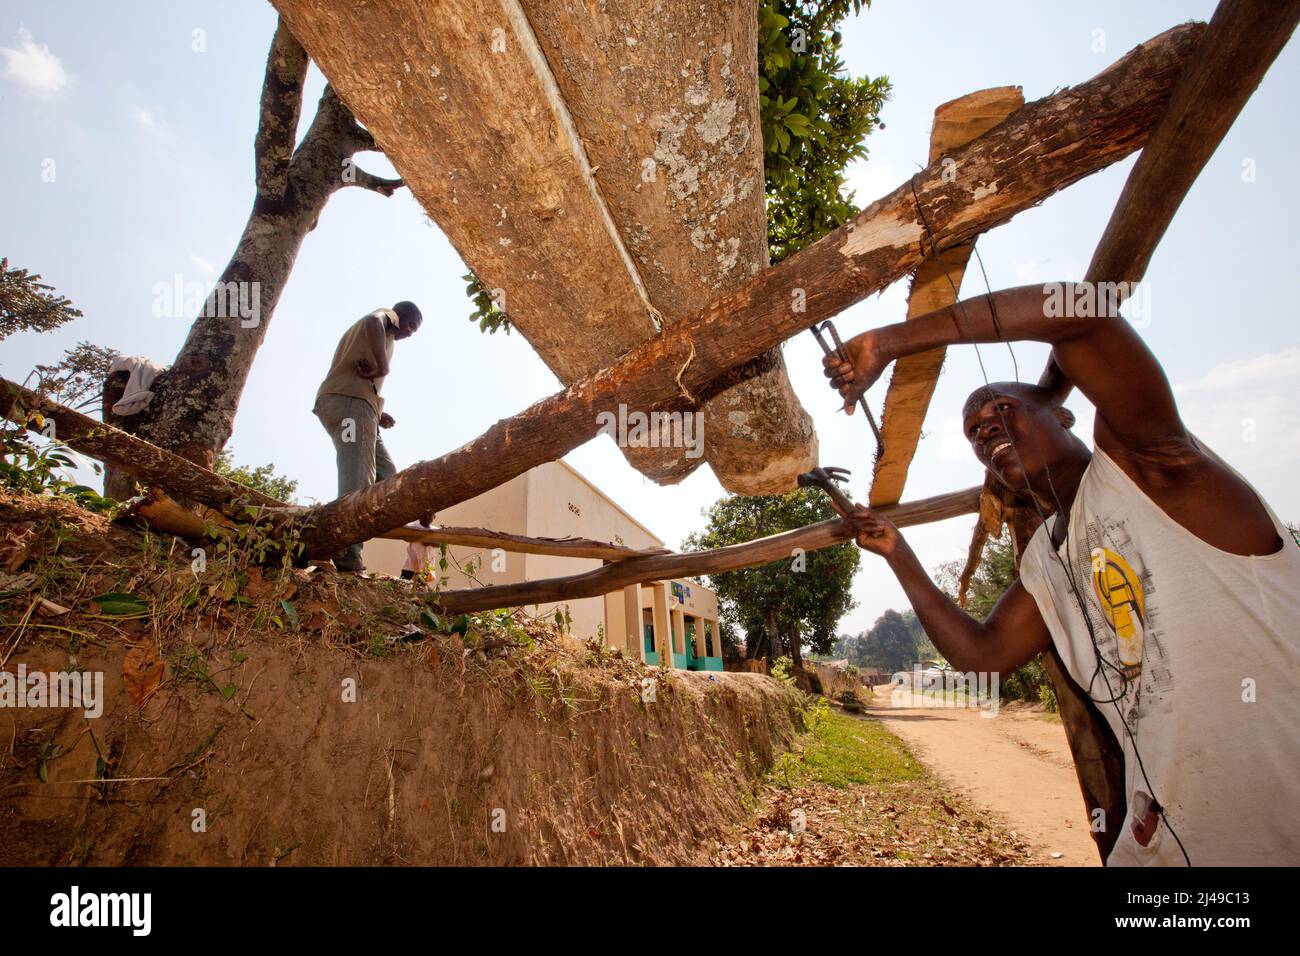 Damascene (sotto) e Sibomane, falegnami, Kivuruga, Gakenke distretto. Questi carpentieri taglieranno 7 tavole da questo tronco in tre ore. Fotografia di Mike Goldwater Foto Stock